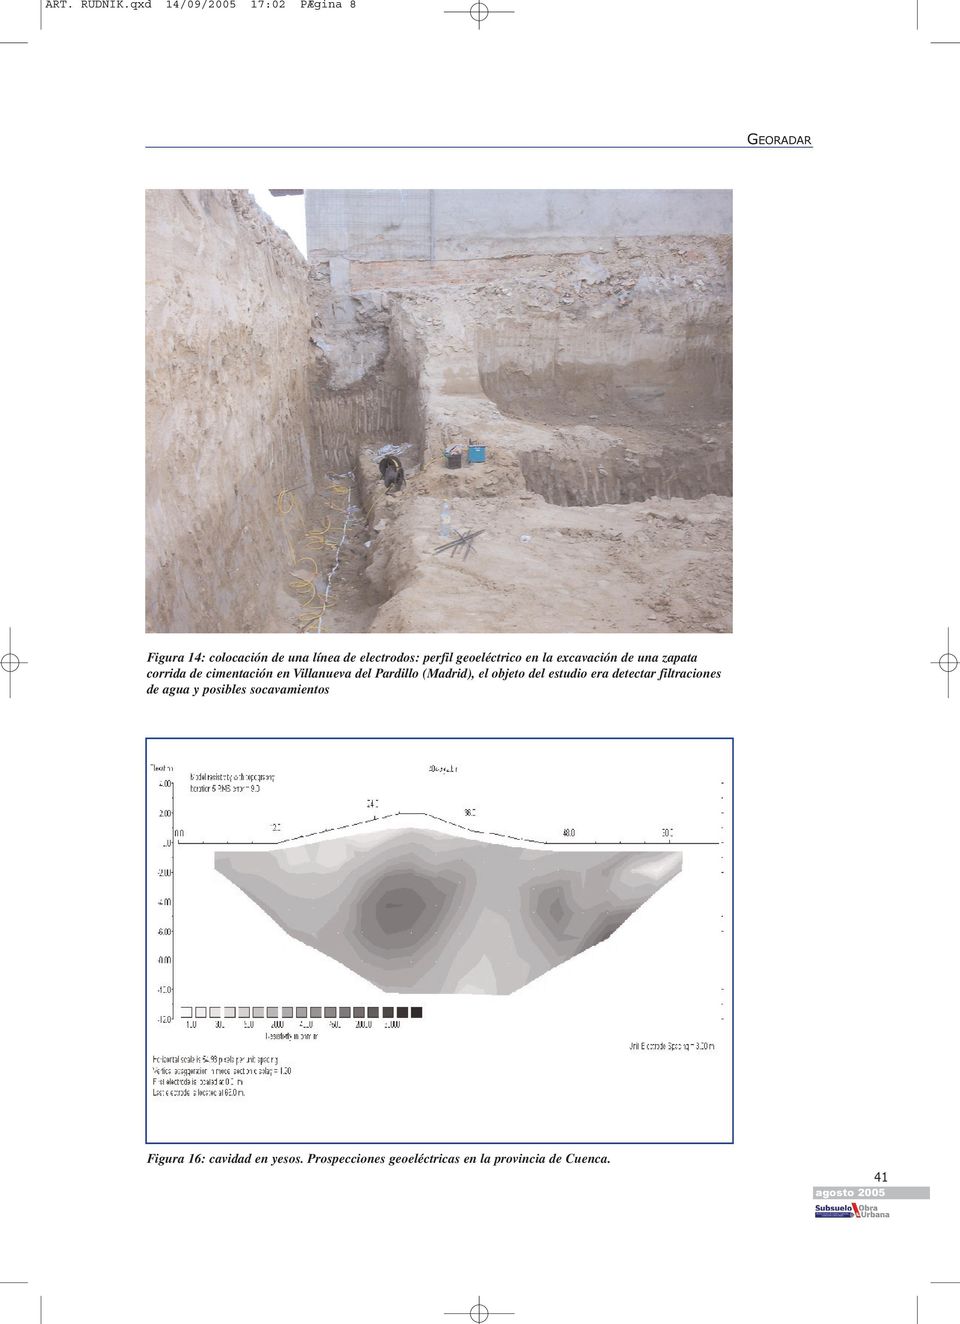 geoeléctrico en la excavación de una zapata corrida de cimentación en Villanueva del